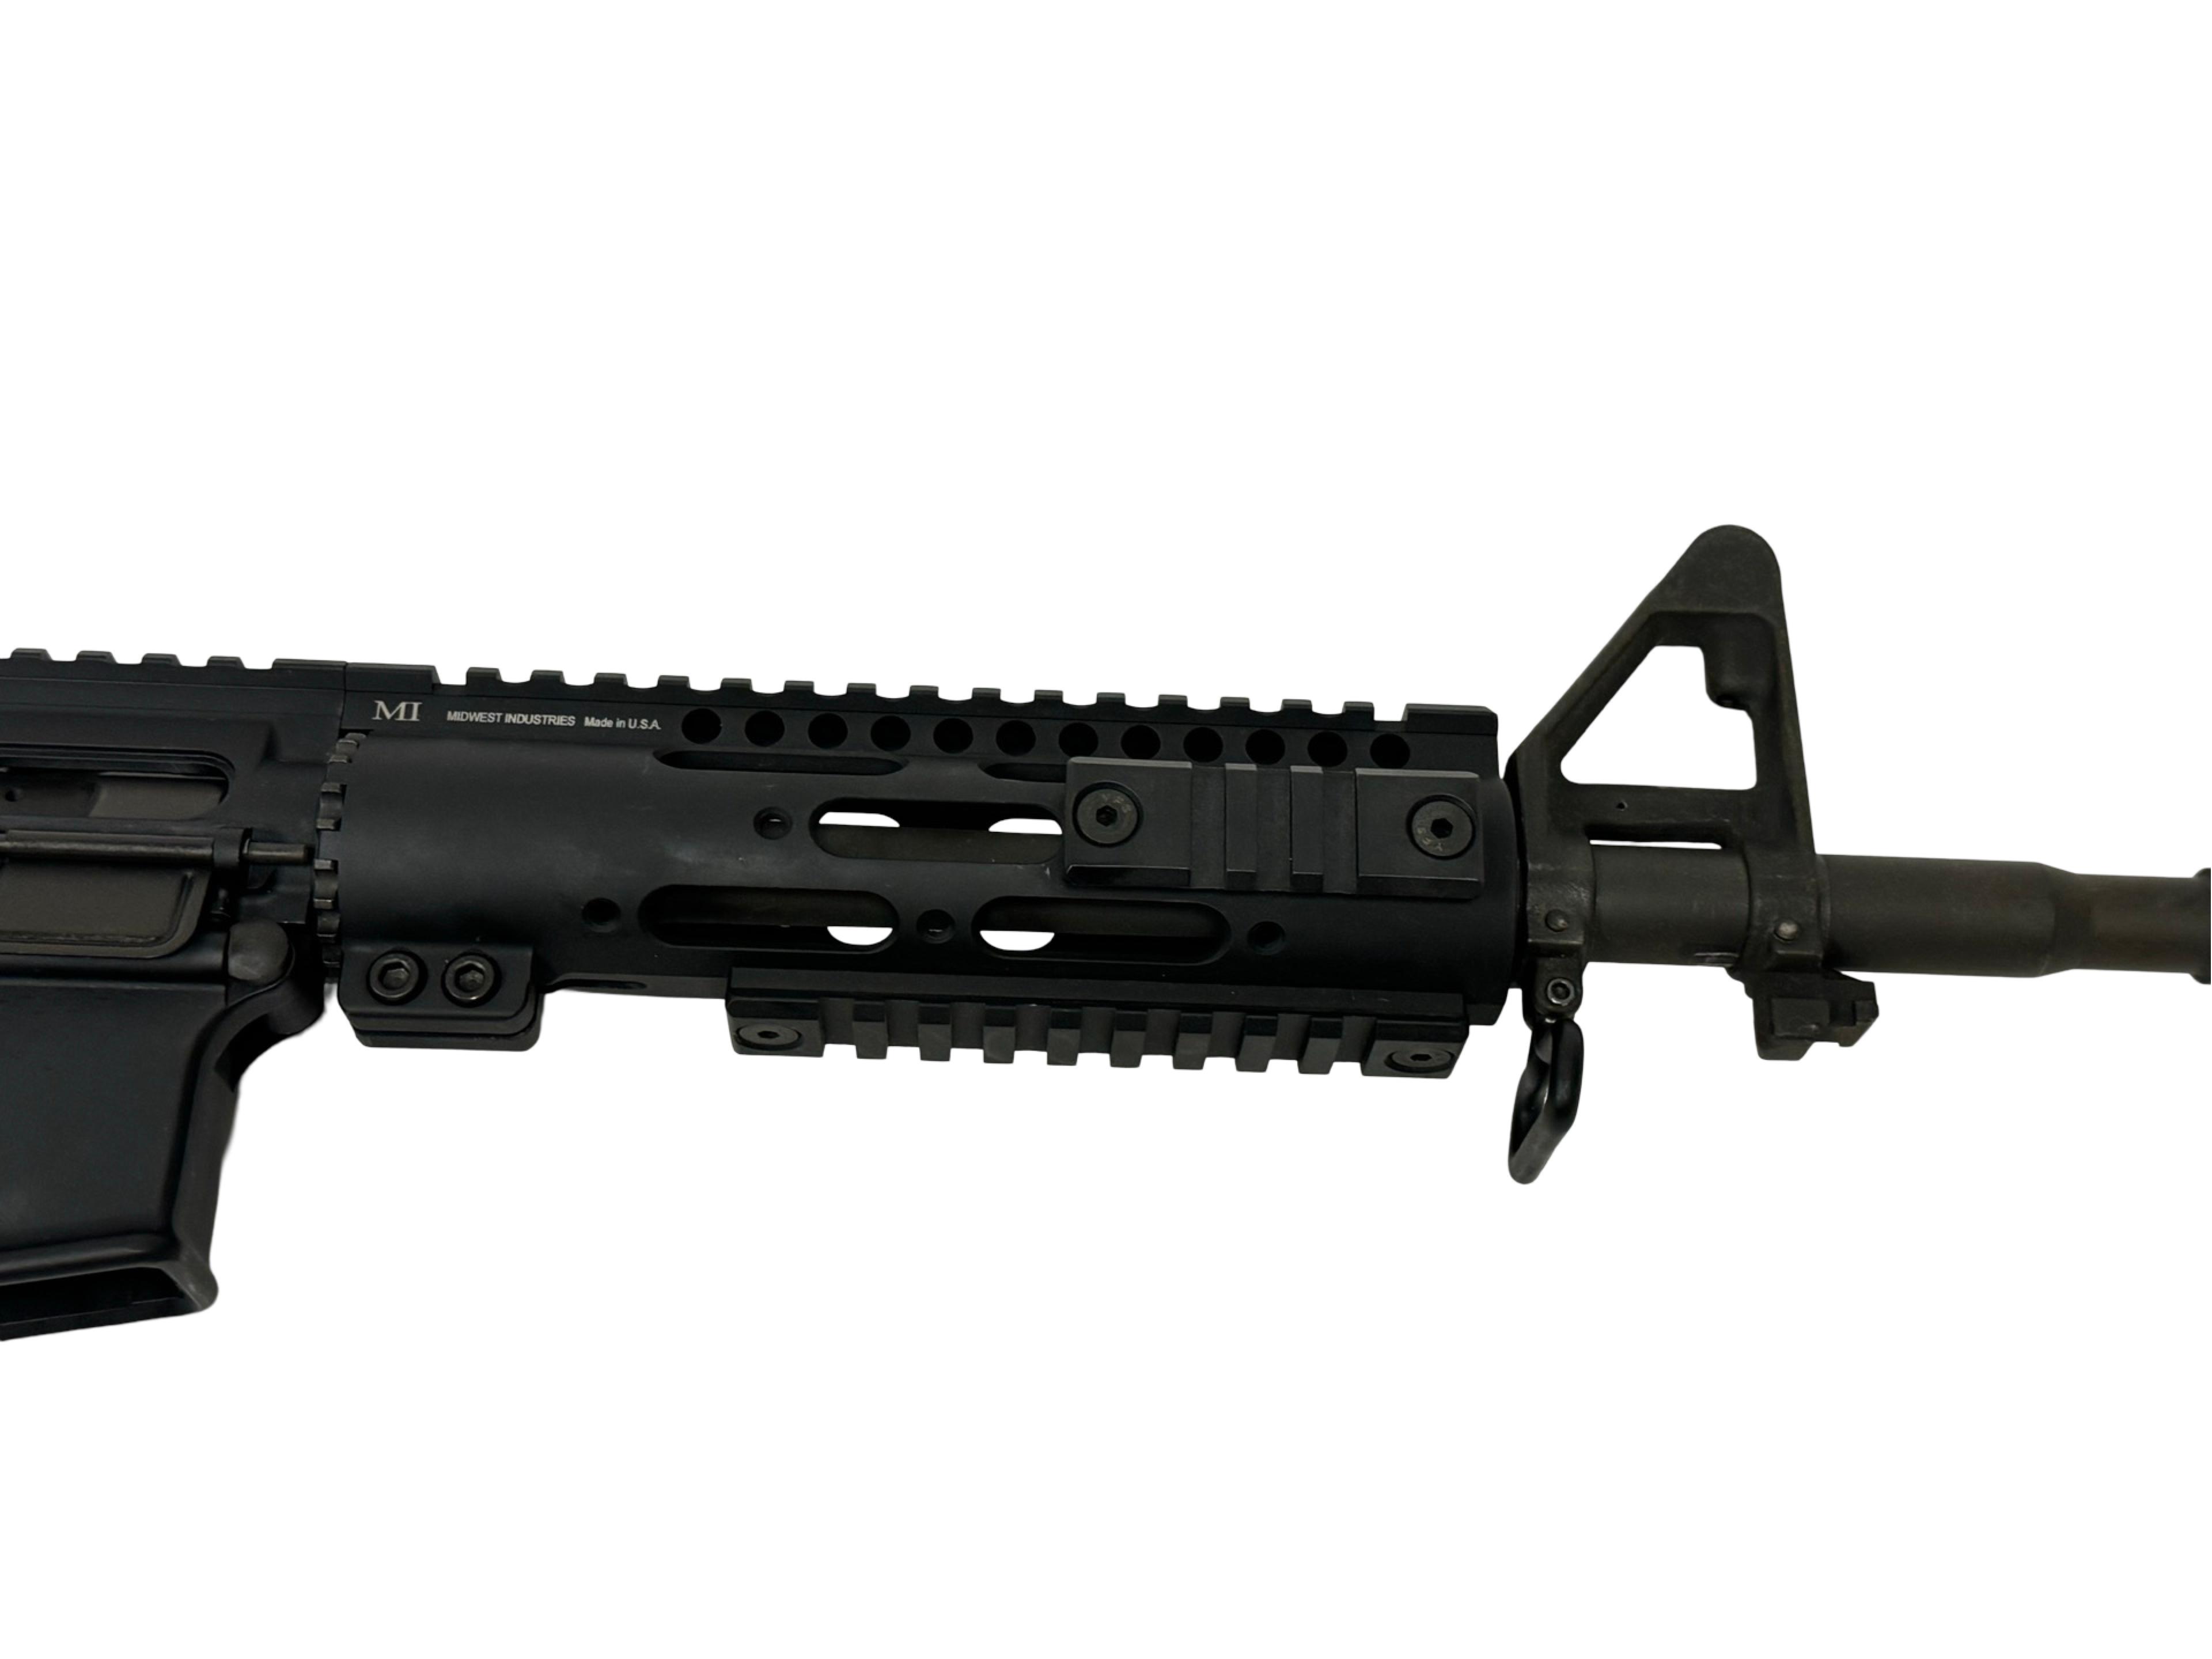 Excellent Palmetto State Armory PA-15 5.56mm NATO Semi-Automatic M4 Carbine